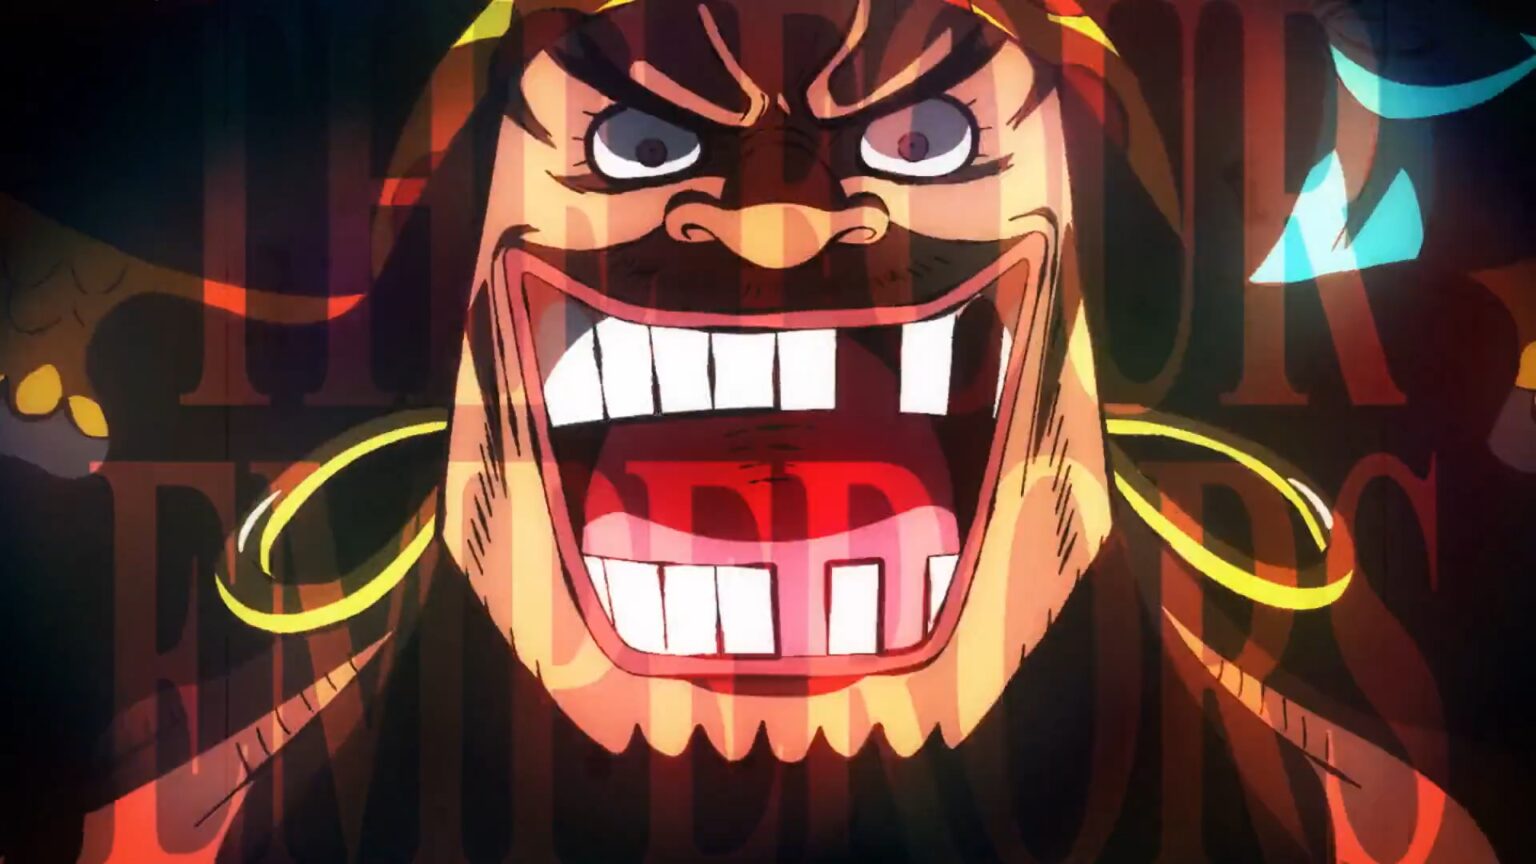 One Piece 957 Blackbeard is the new Yonko after he killed Whitebeard.